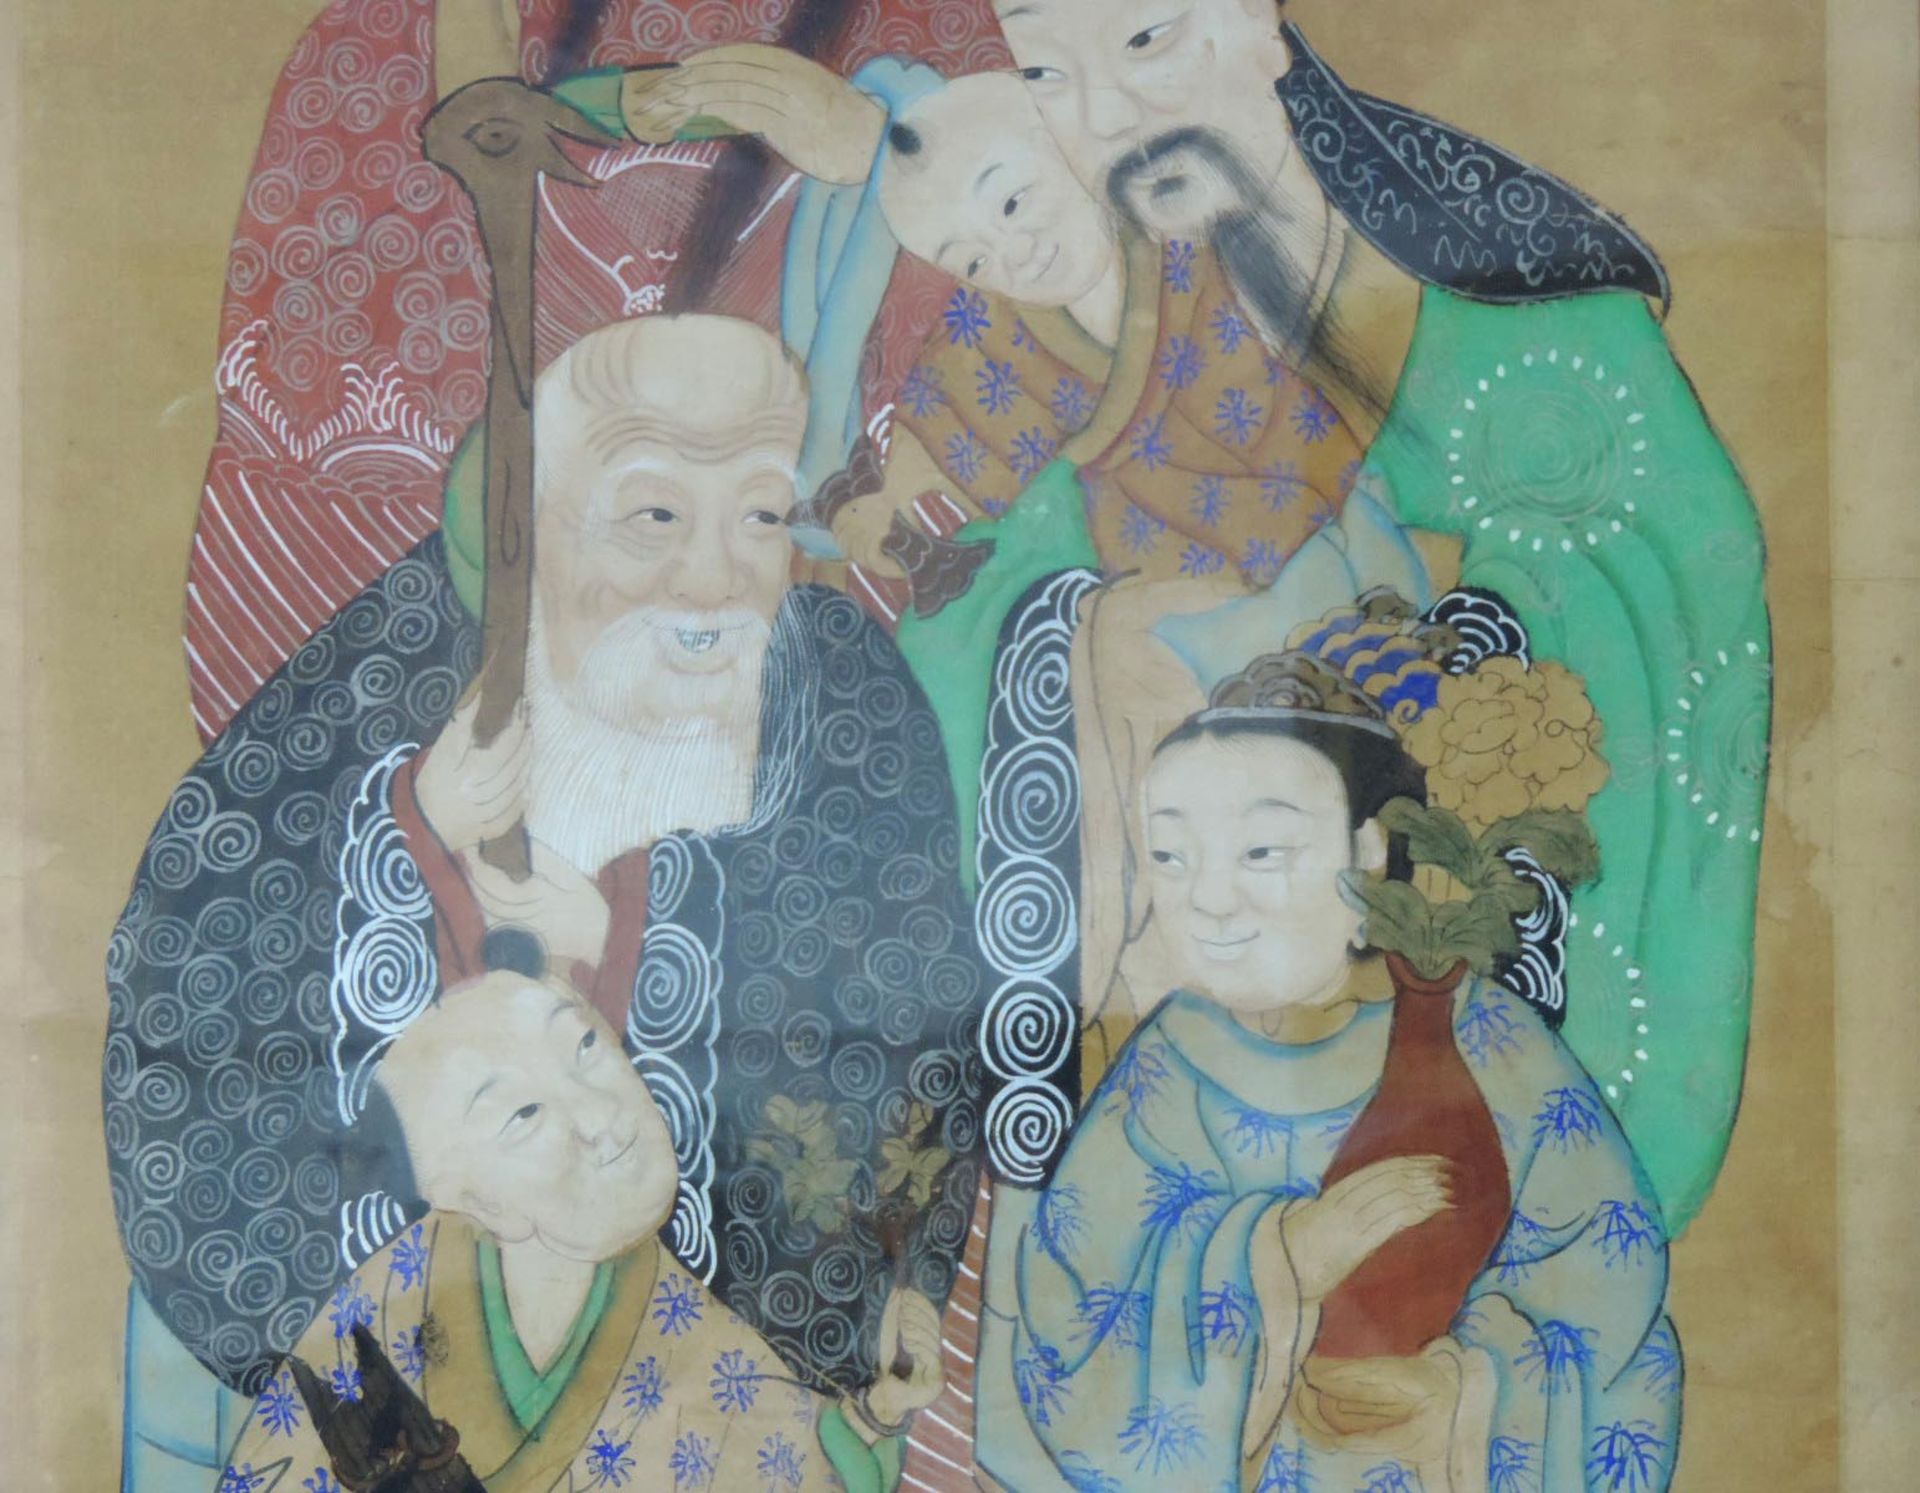 Aquarell mit verschiedenen Göttern und historischen Figuren, China/Japan.116 cm x 69 cm. Gemalt, - Bild 5 aus 6